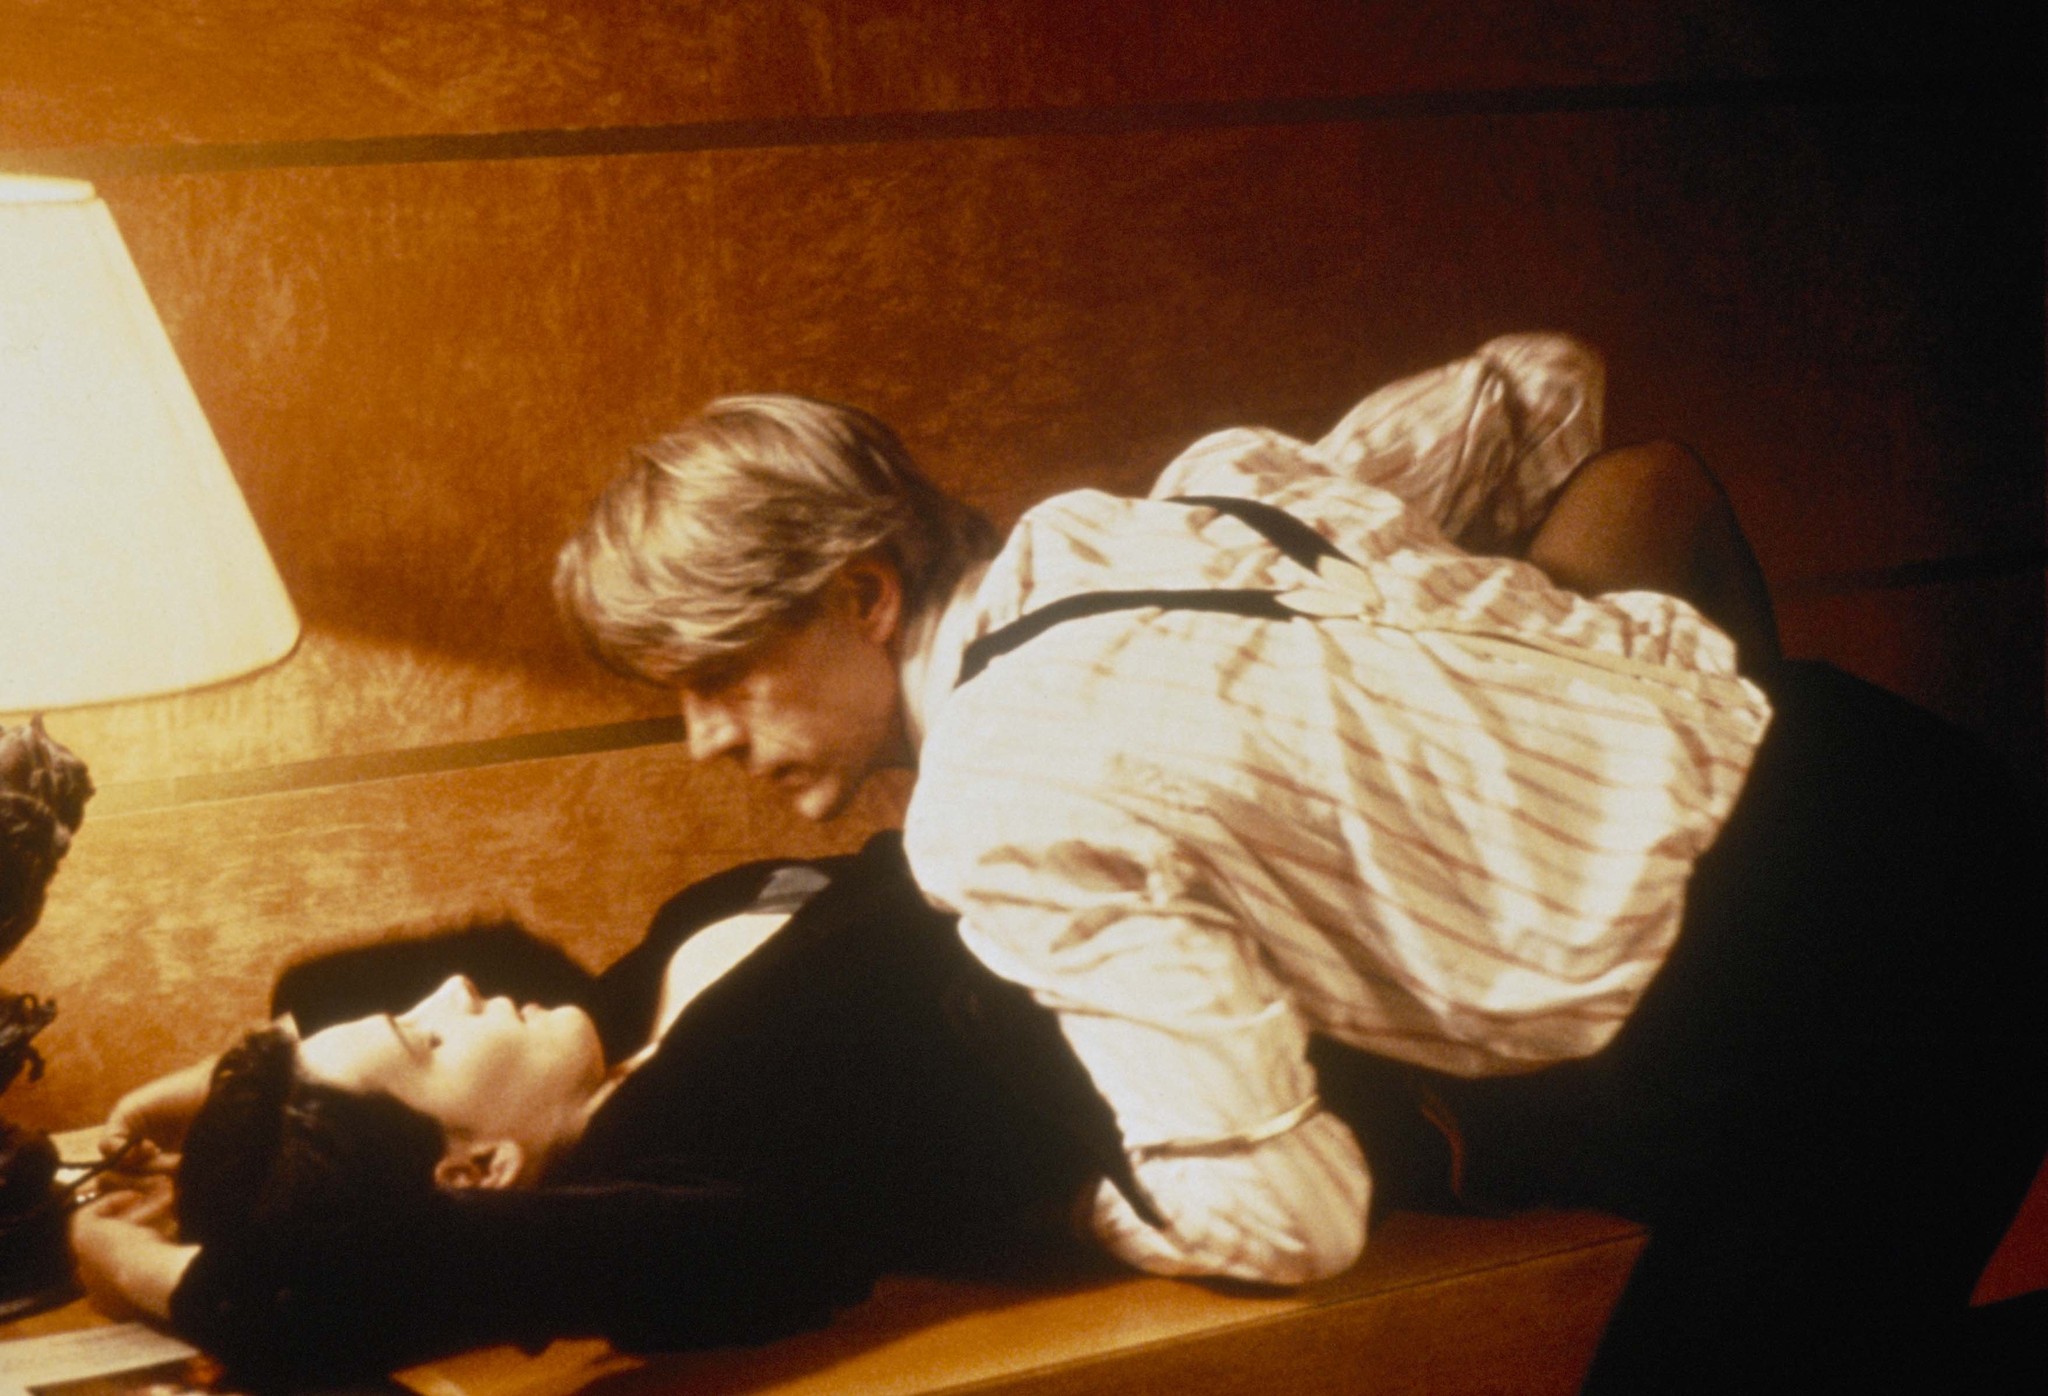 Still of Juliette Binoche and Jeremy Irons in Damage (1992)